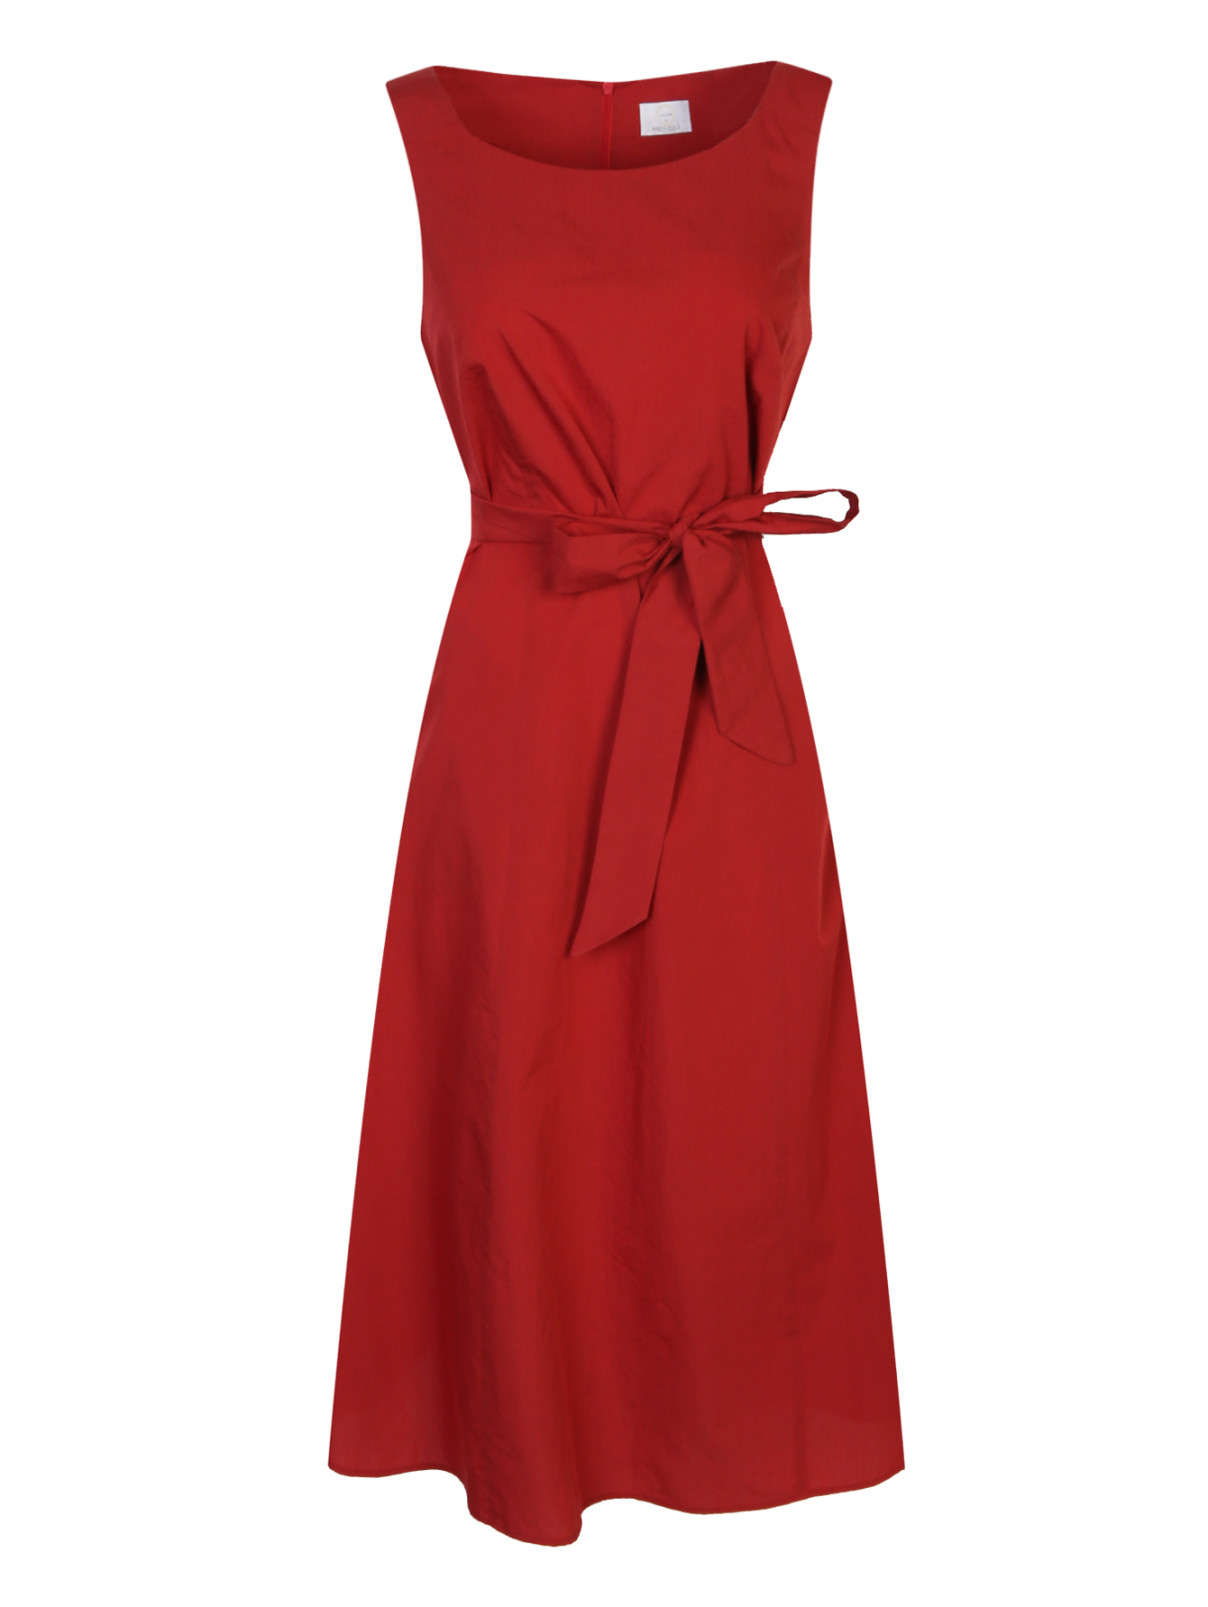 Платье из хлопка и шелка без рукавов Marina Rinaldi  –  Общий вид  – Цвет:  Красный